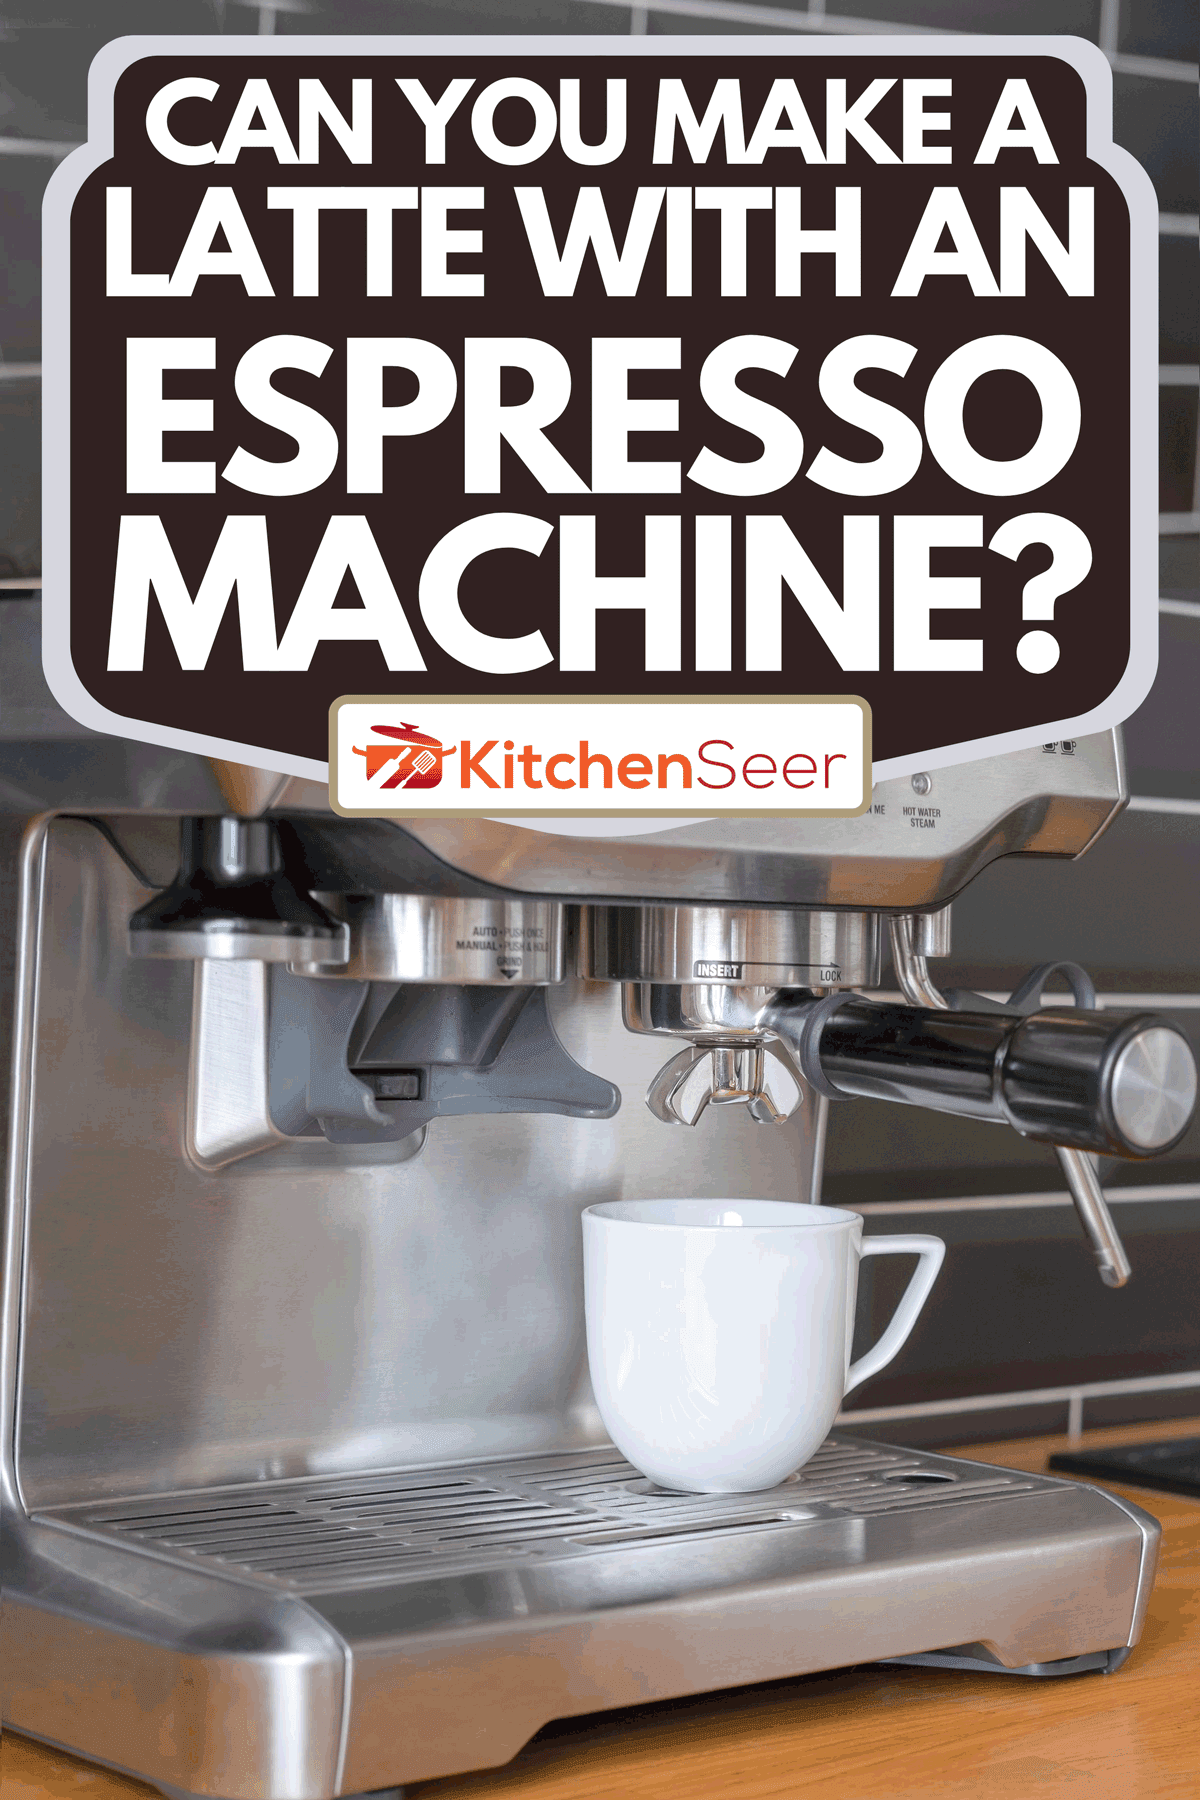 在煮咖啡的过程中，一个白色的杯子立在浓缩咖啡机里，你能用浓缩咖啡机做拿铁吗?